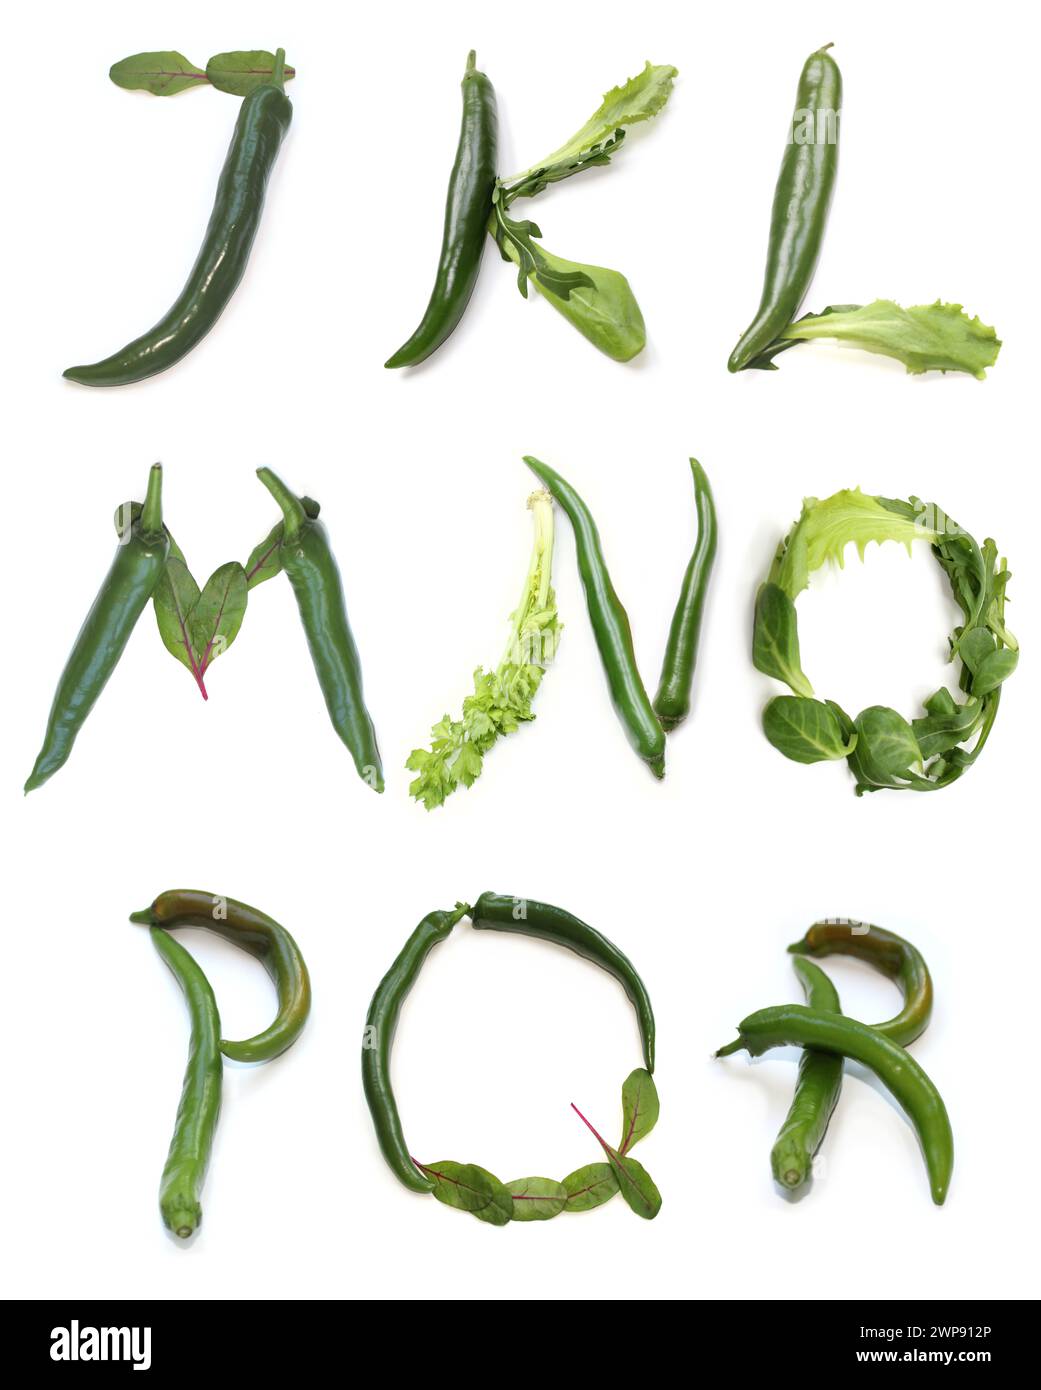 letters j k l m n o p q r from chili peppers, green salad leaf for text word, poster, brunch banner, bowls menu card, vegan bowl, vegetarian food bowl Stock Photo